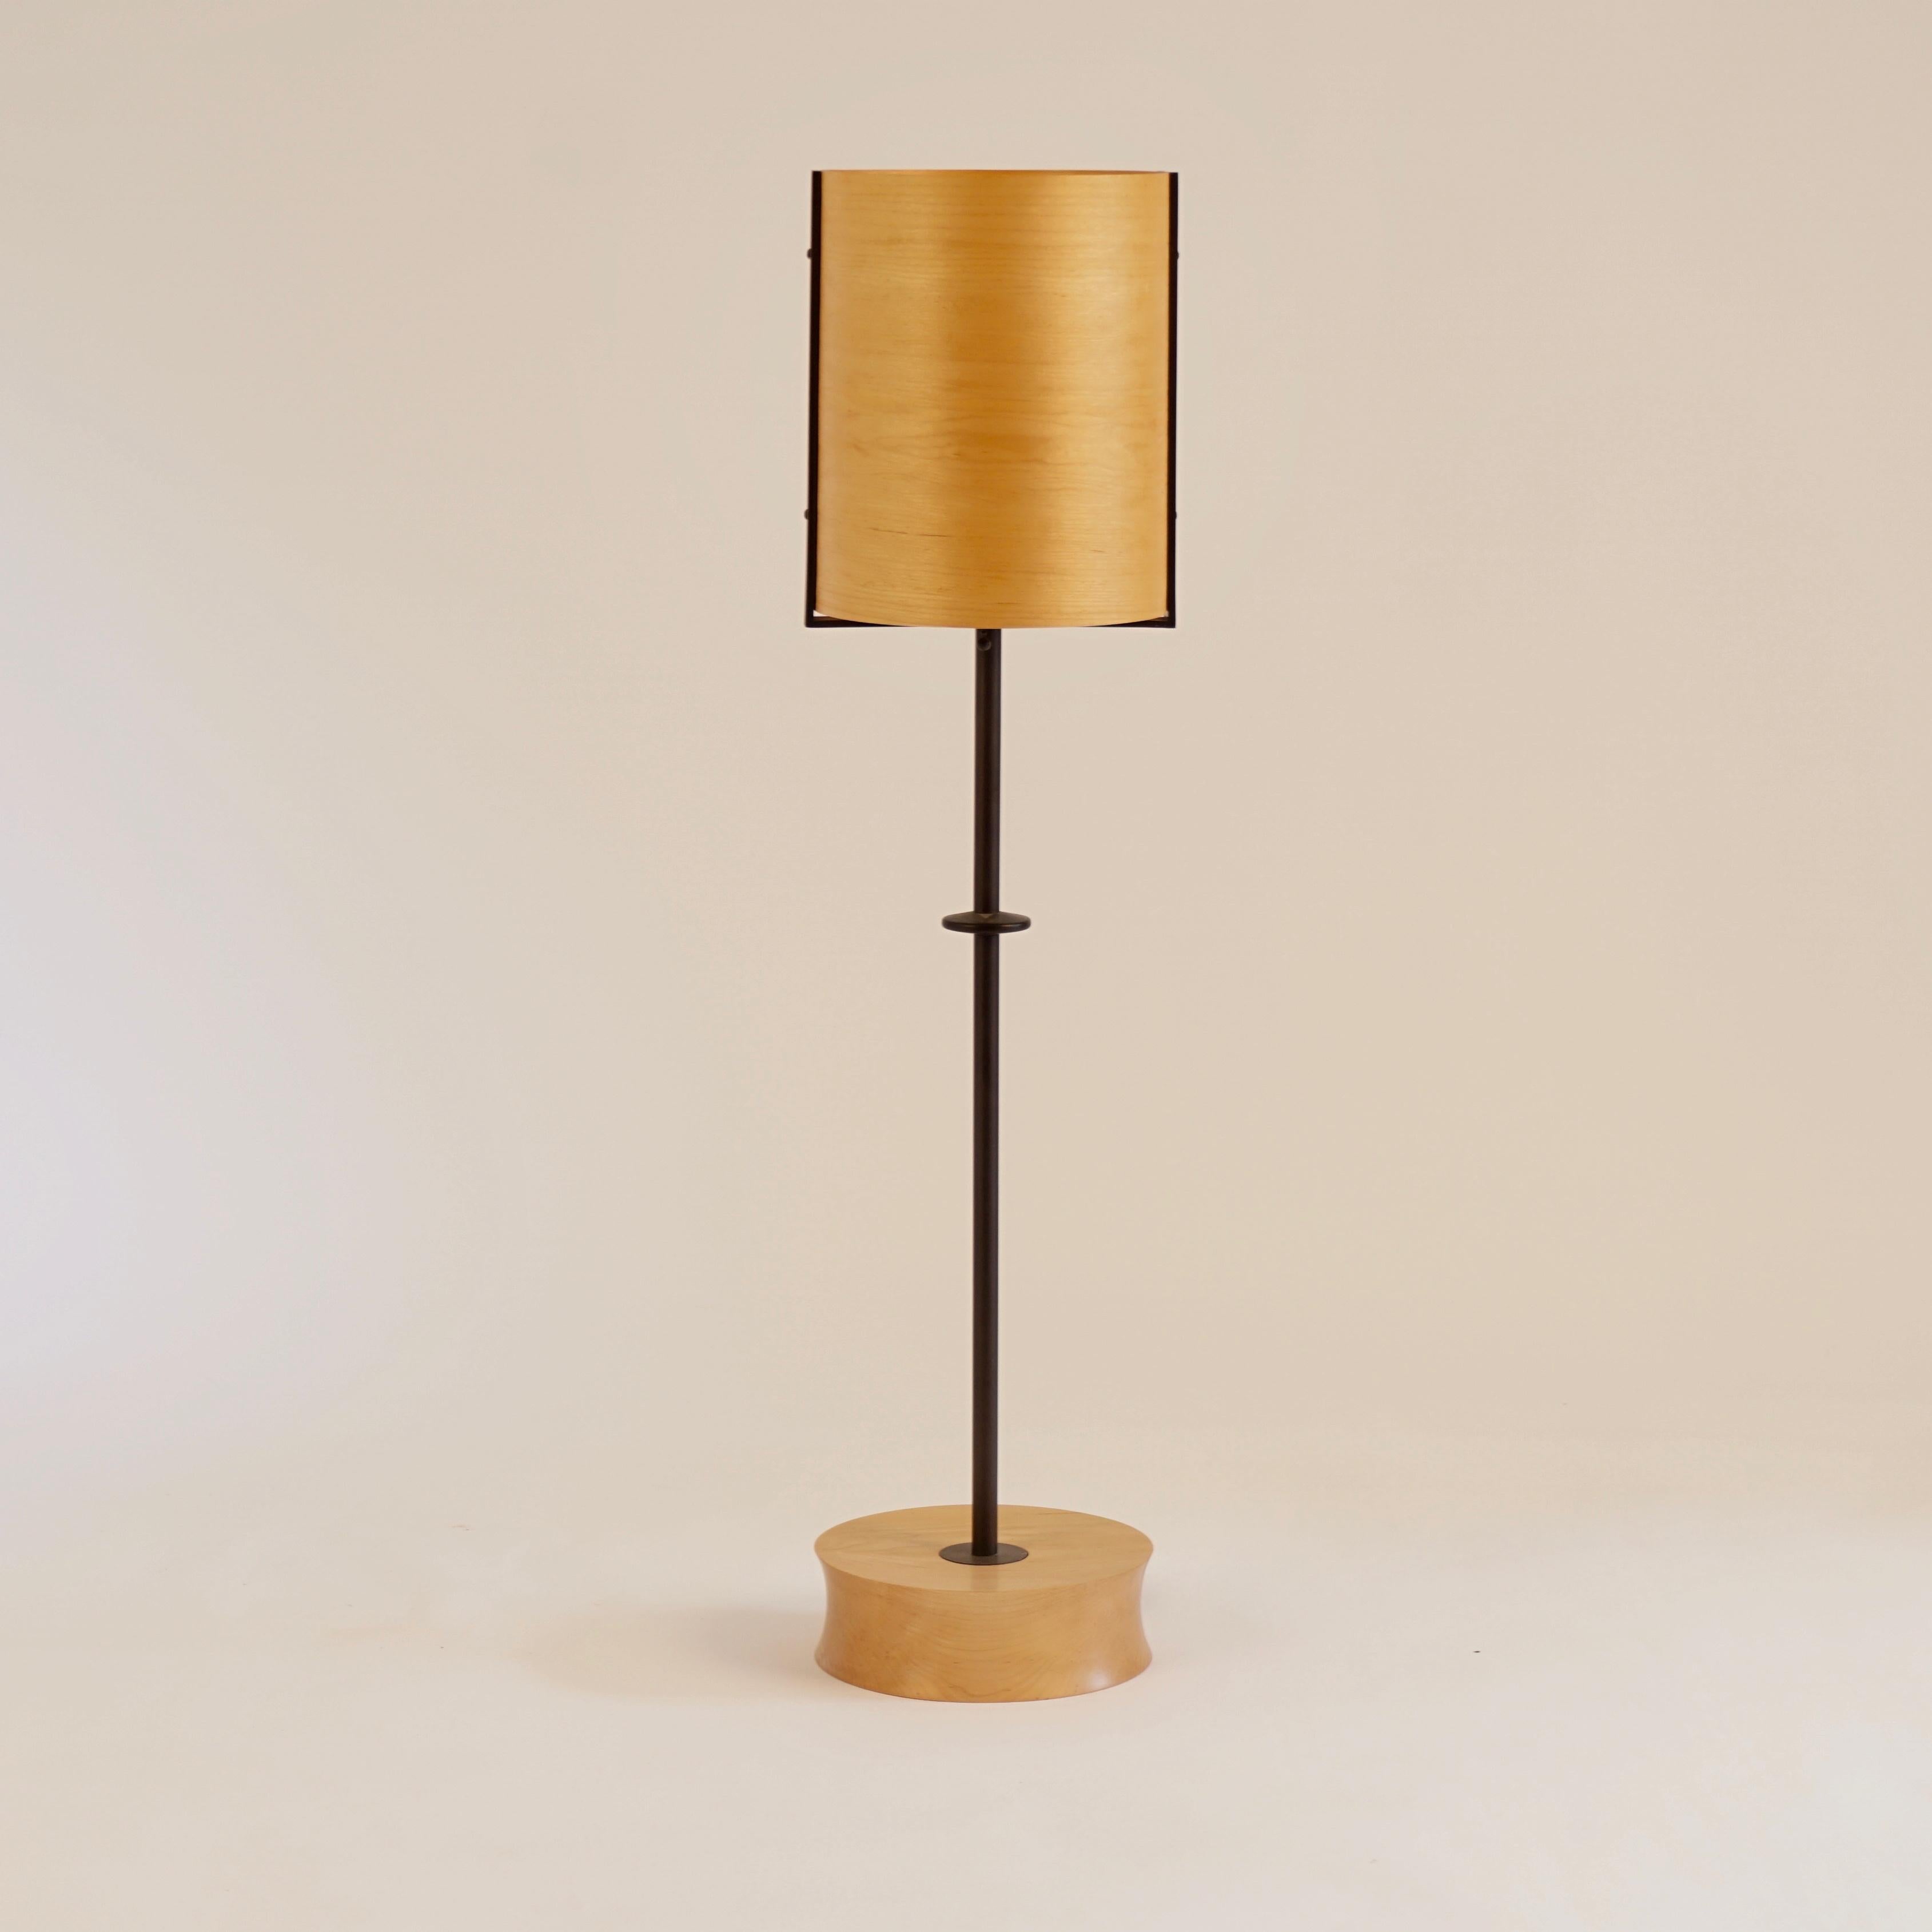 Die Lampe #6 aus Ahornfurnier ist Teil der ursprünglichen Lehrecke Furnierleuchten-Kollektion von 1998. Die Idee begann mit der schönen Art und Weise, wie das Licht durch die dünnen Holzfurniere, meist einheimische Hölzer, fällt. Das Furnier hat